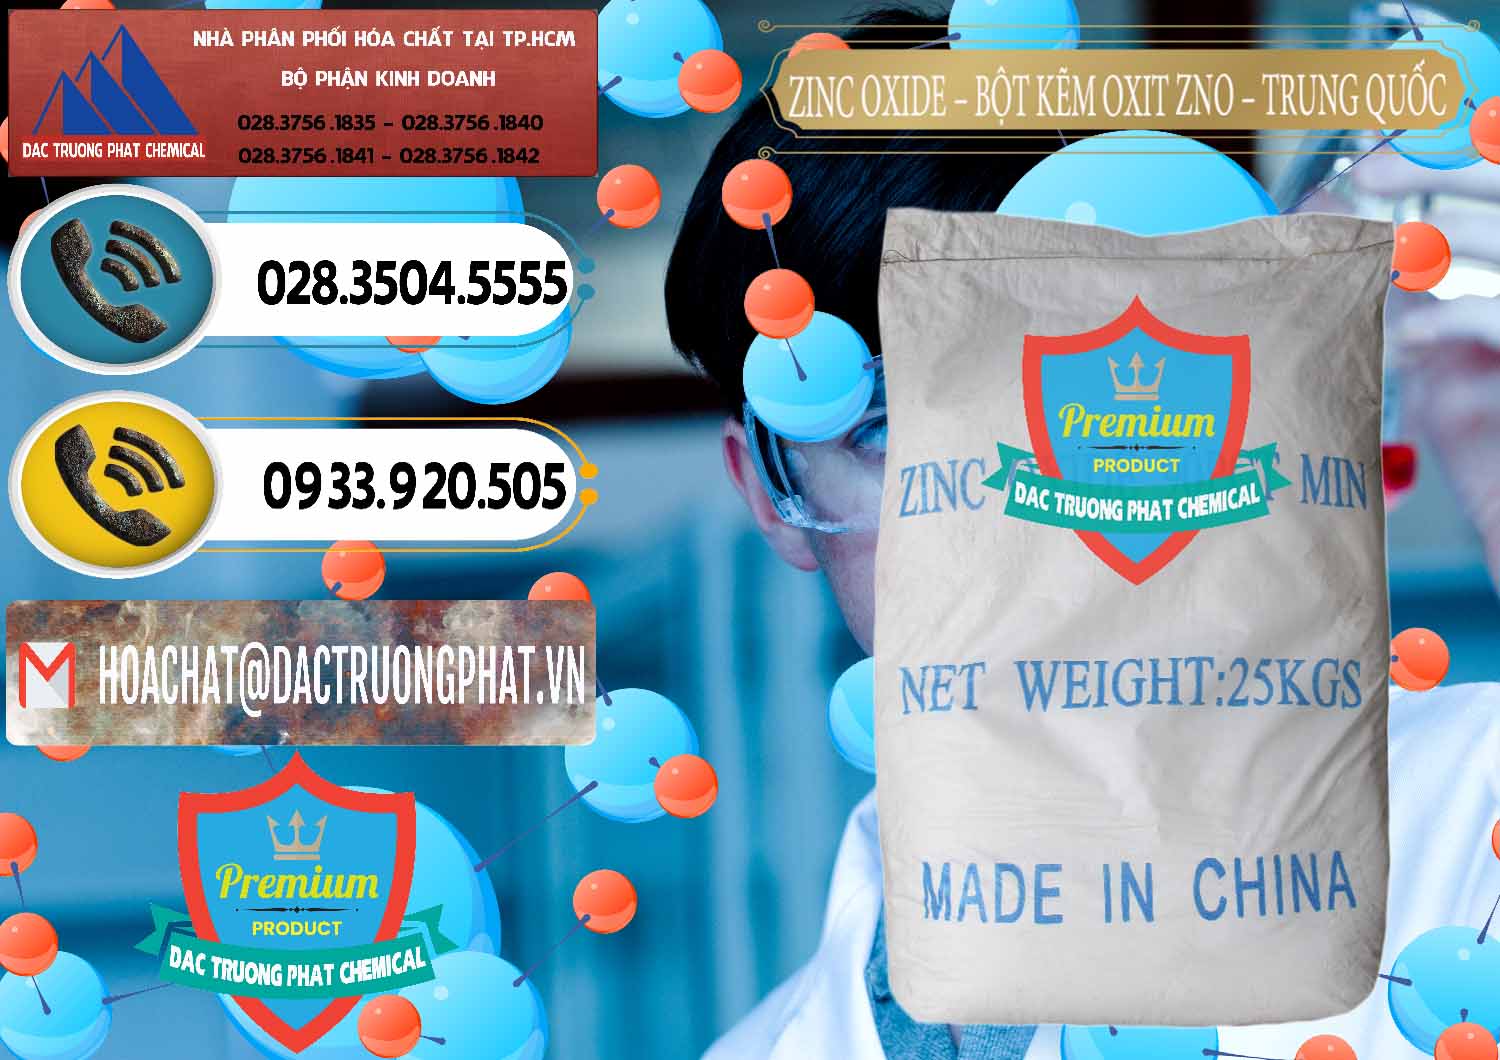 Chuyên nhập khẩu và bán Zinc Oxide - Bột Kẽm Oxit ZNO Trung Quốc China - 0182 - Chuyên cung cấp ( kinh doanh ) hóa chất tại TP.HCM - hoachatdetnhuom.vn